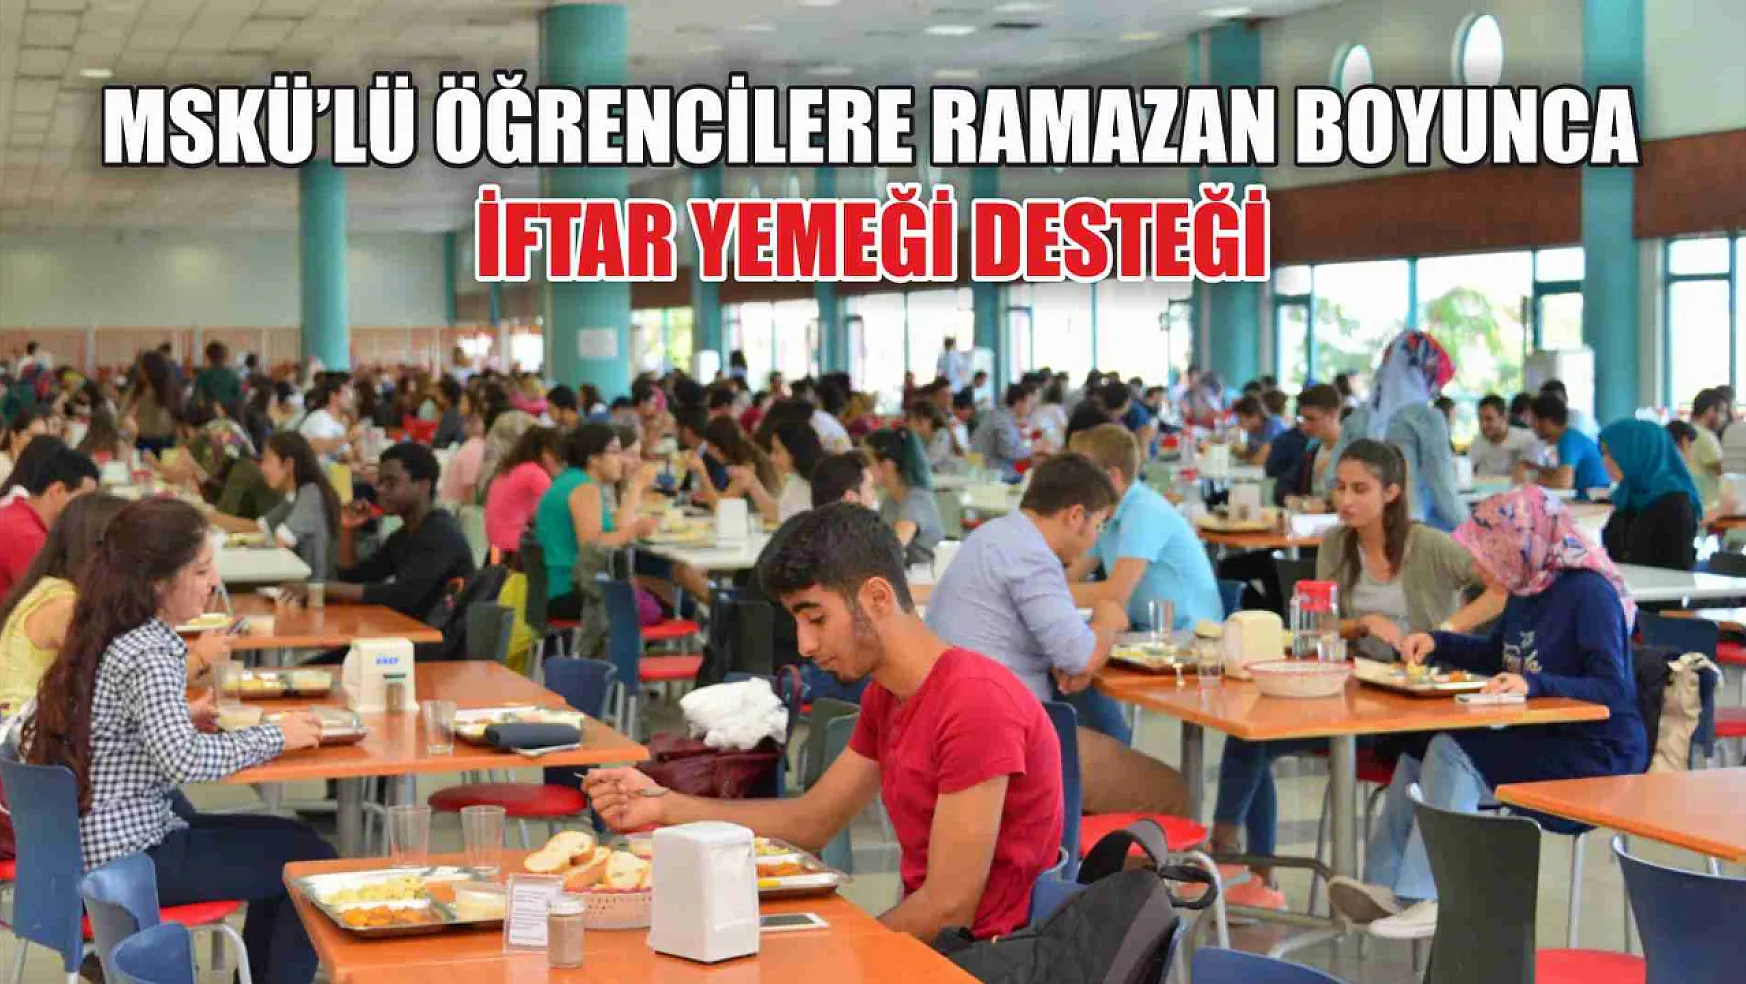 MSKÜ'lü Öğrencilere Ramazan Boyunca İftar Yemeği Desteği